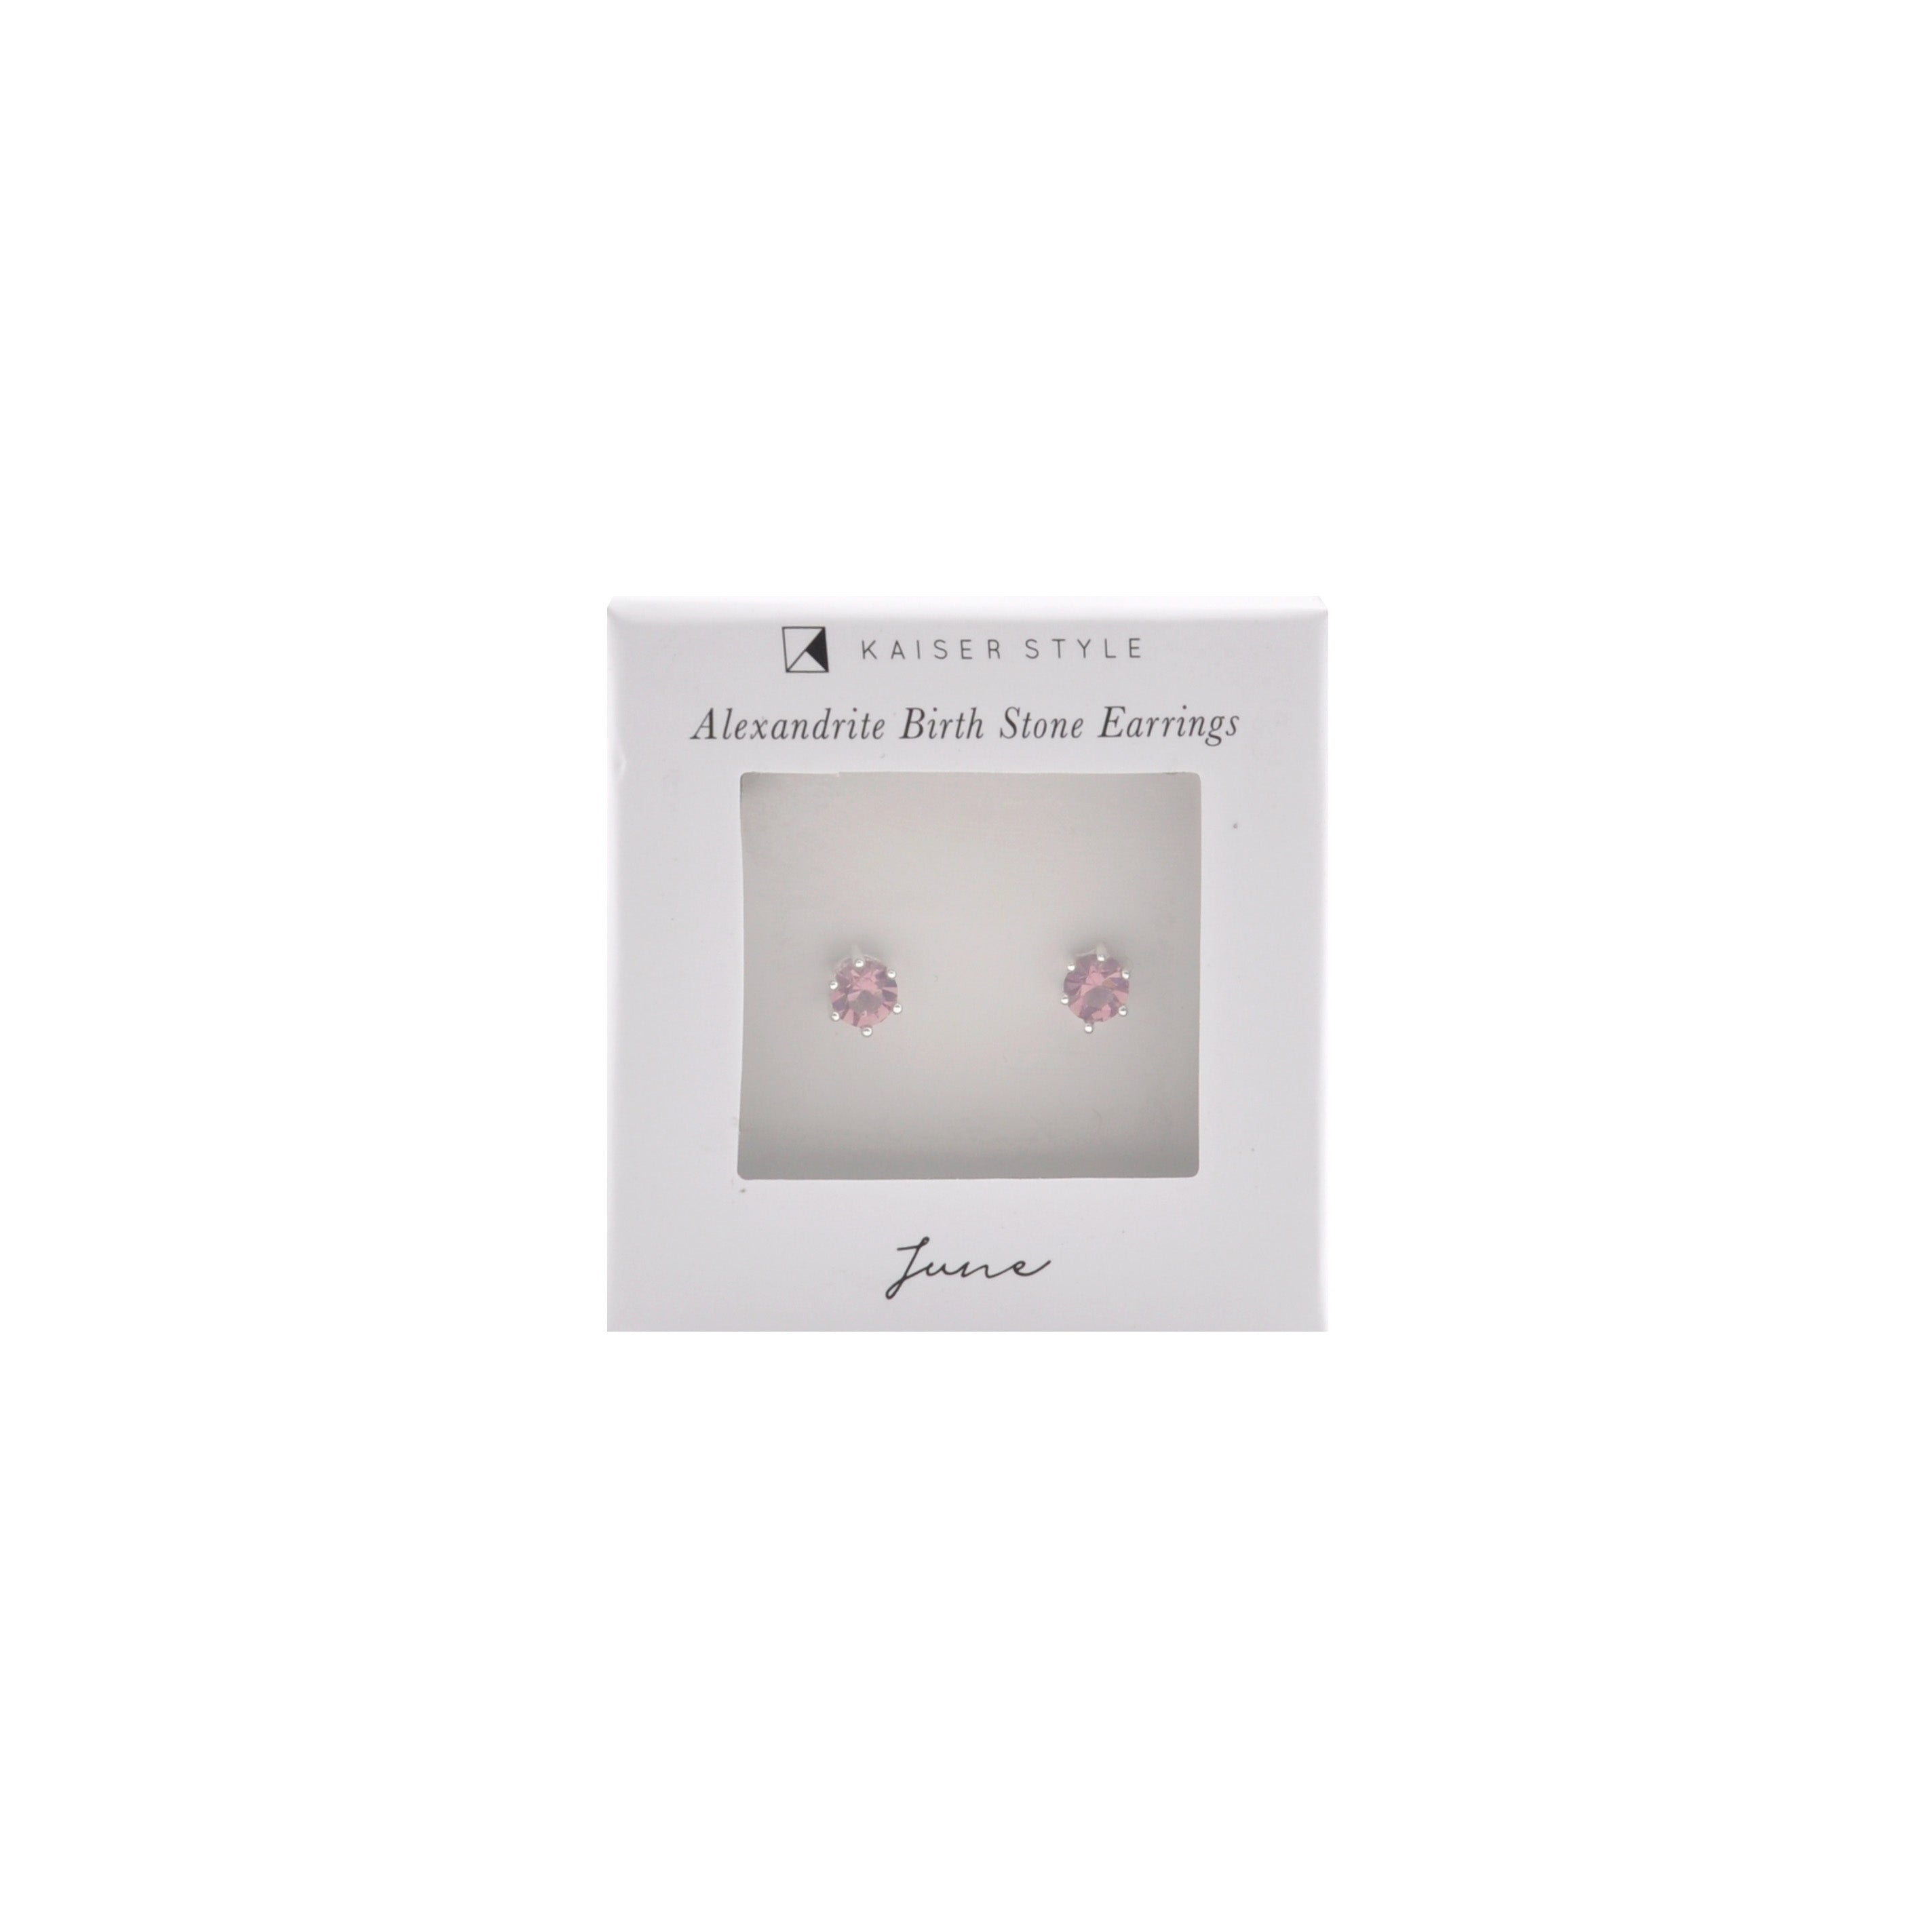 Birthstone Earrings - June